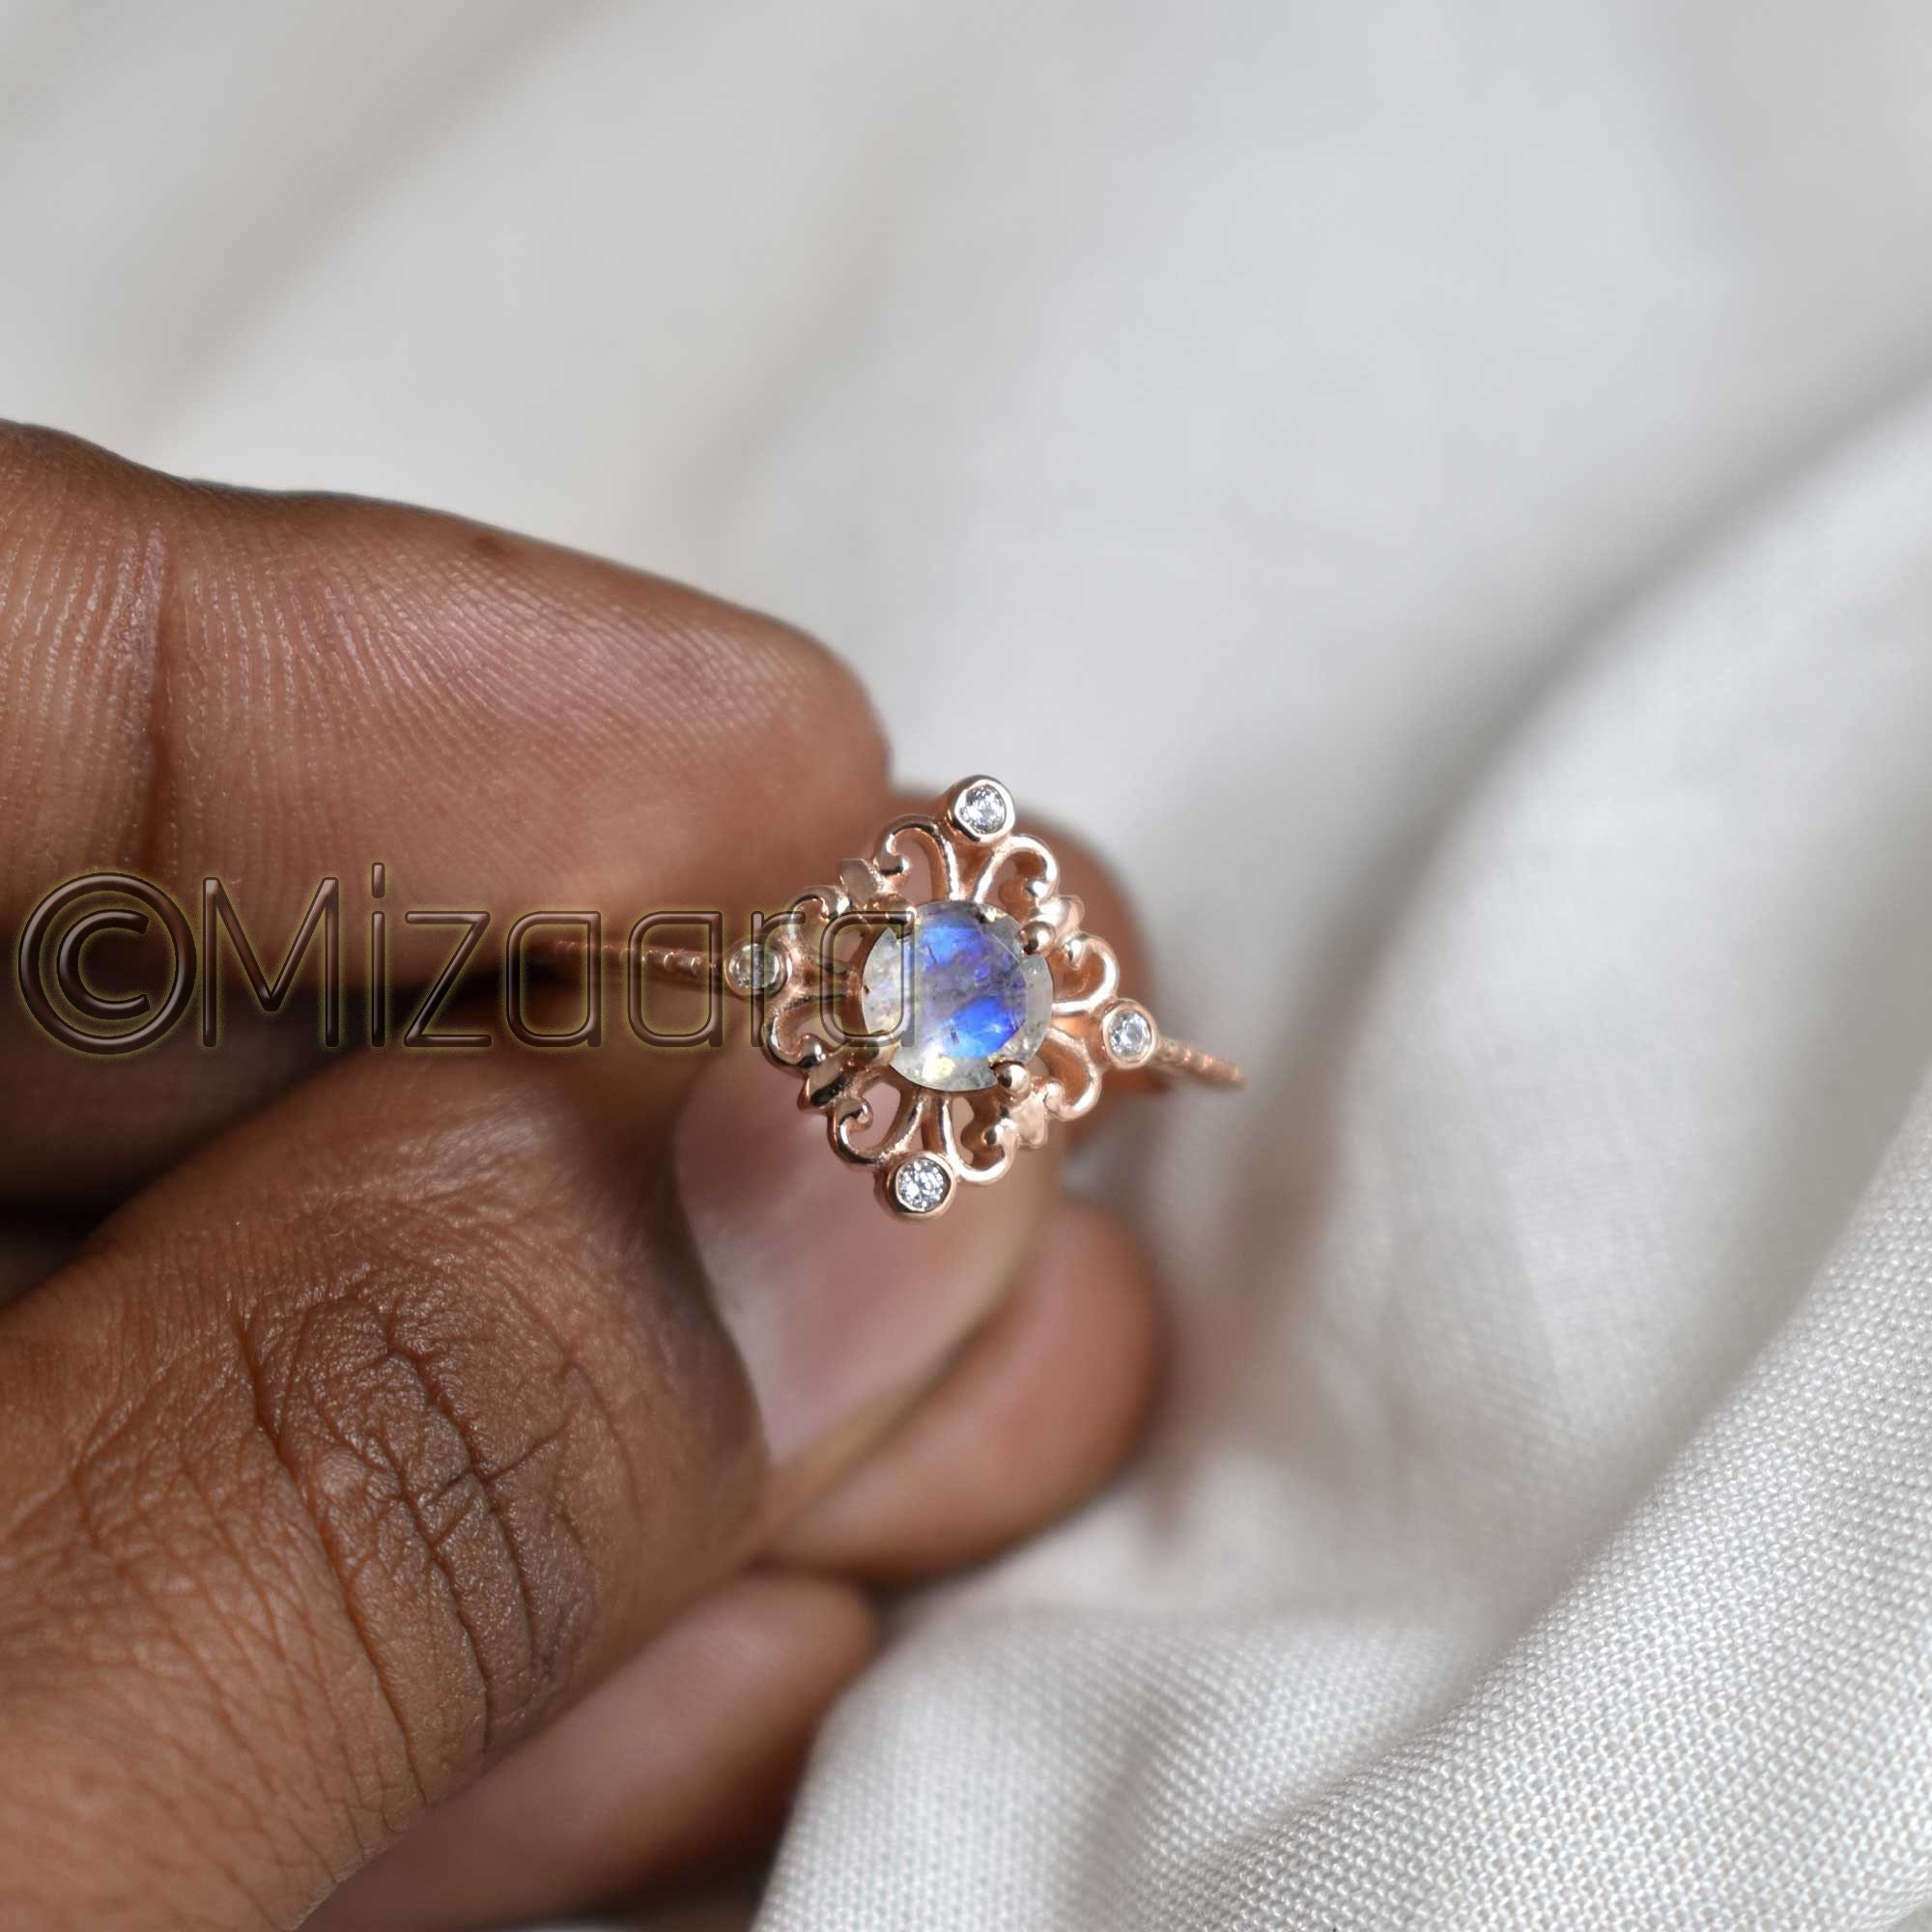 Blue Fire Moonstone 925 Sterling Silver Ring Rose Gold June Birthstone Wedding Gift Women's Elegant Girls